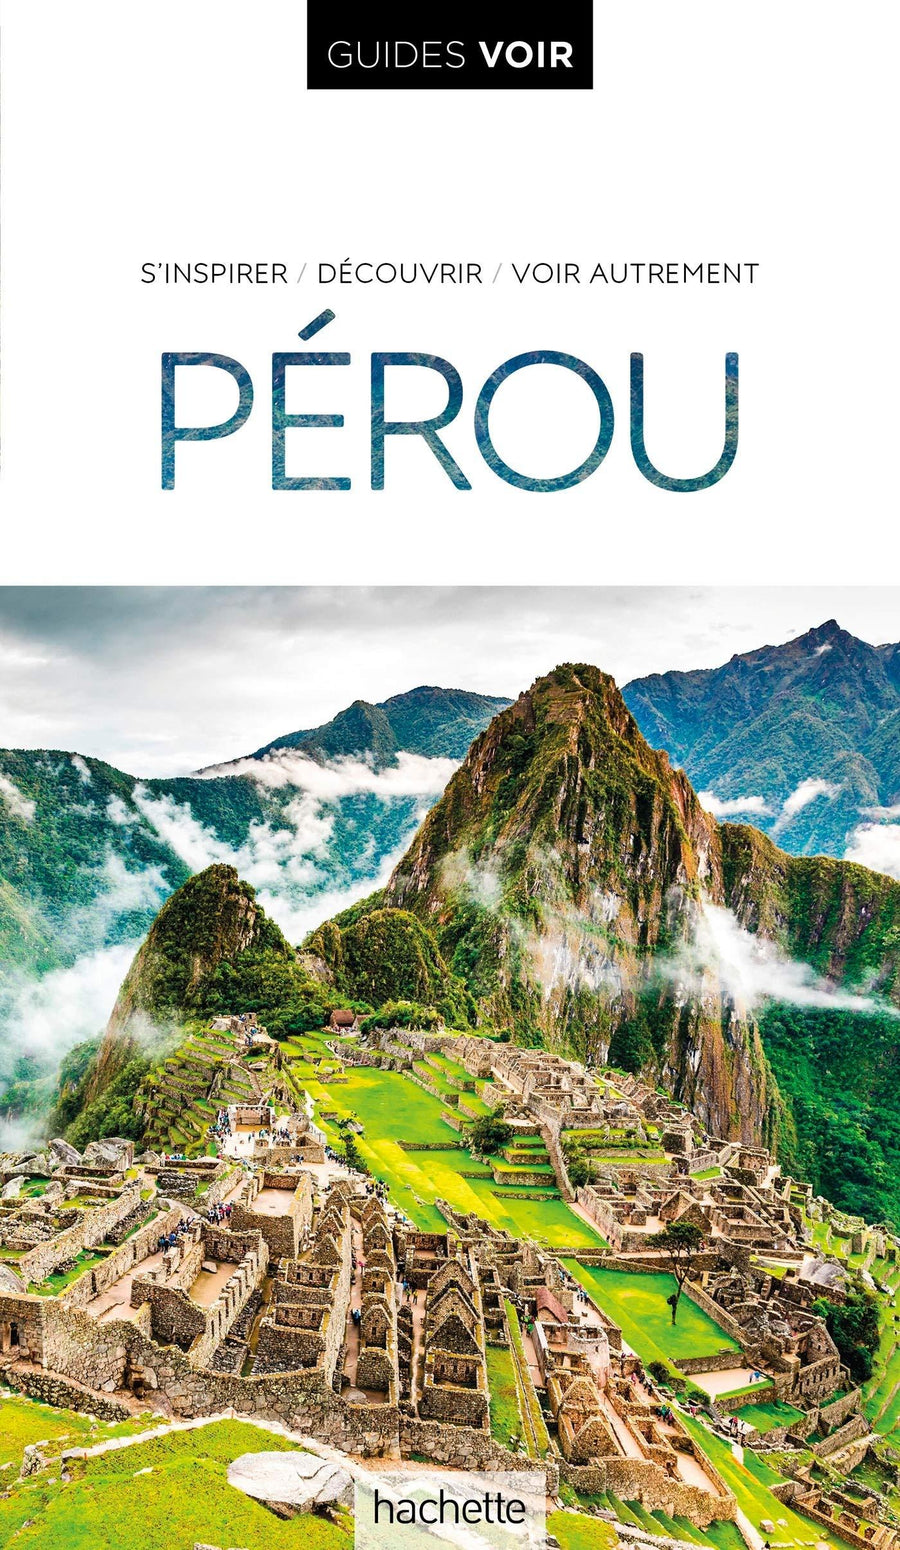 Guide de voyage - Pérou - Édition 2020 | Guides Voir guide de voyage Guides Voir 